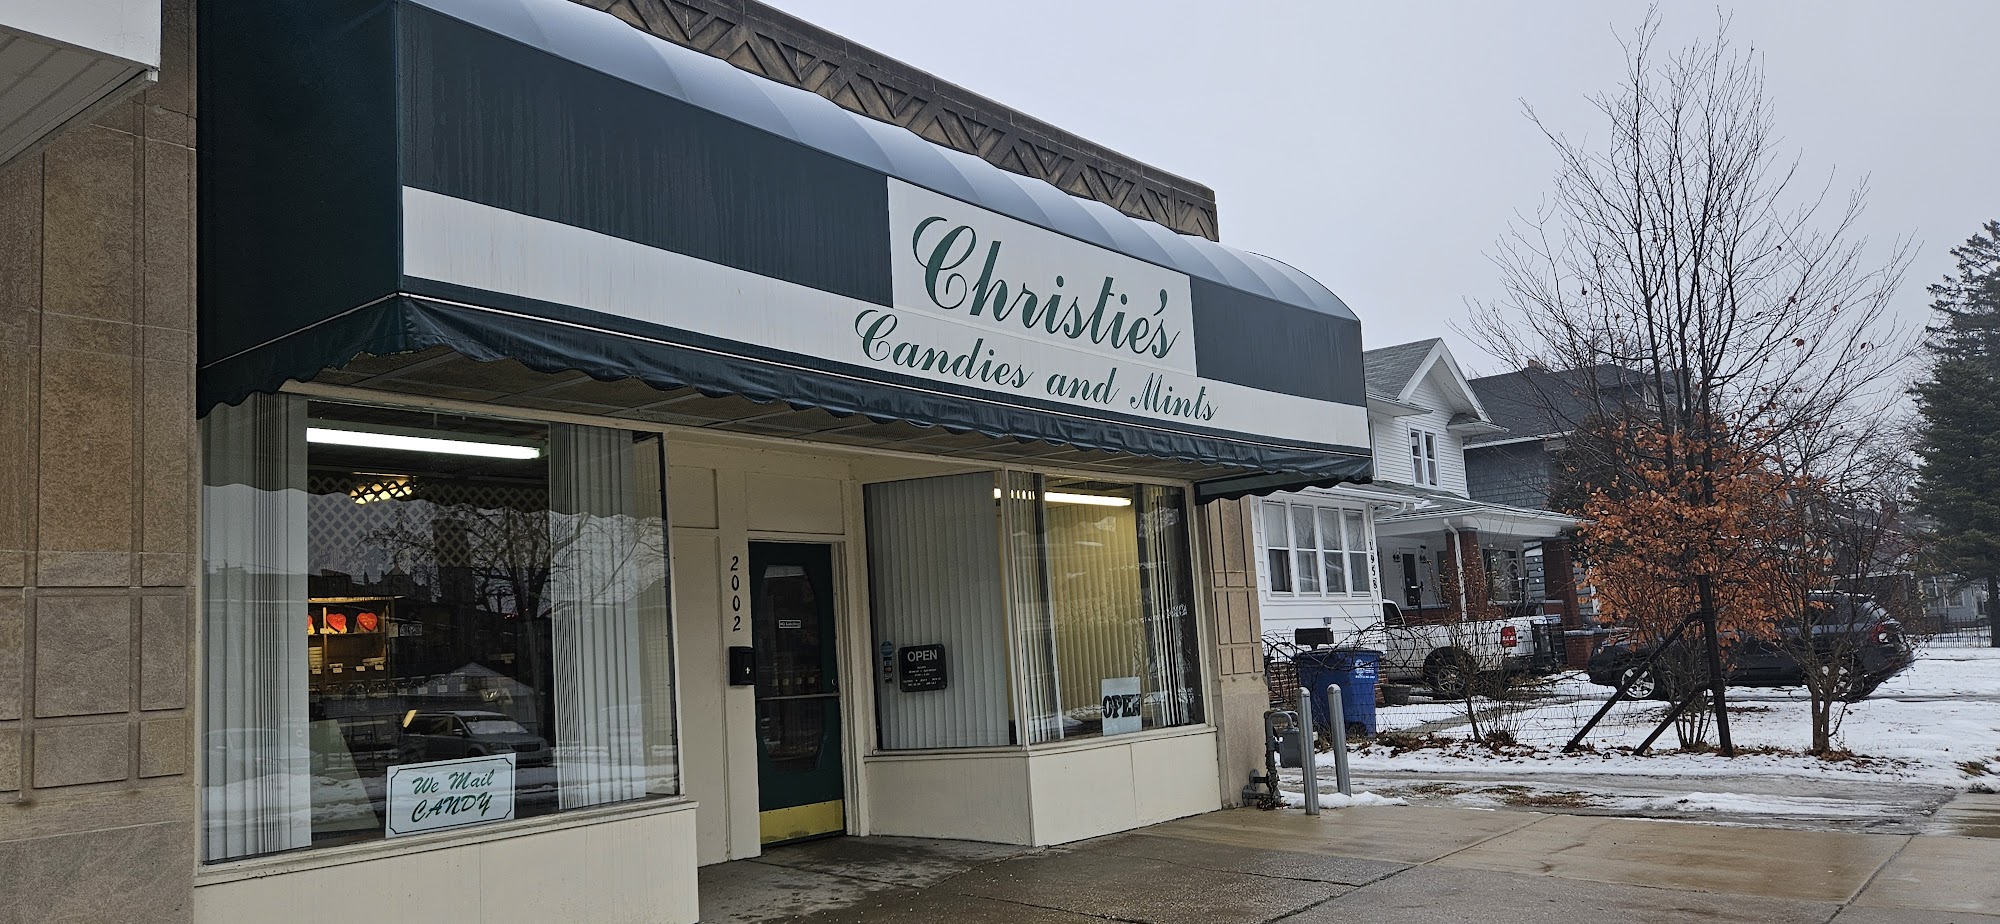 Christie's Candies & Mints